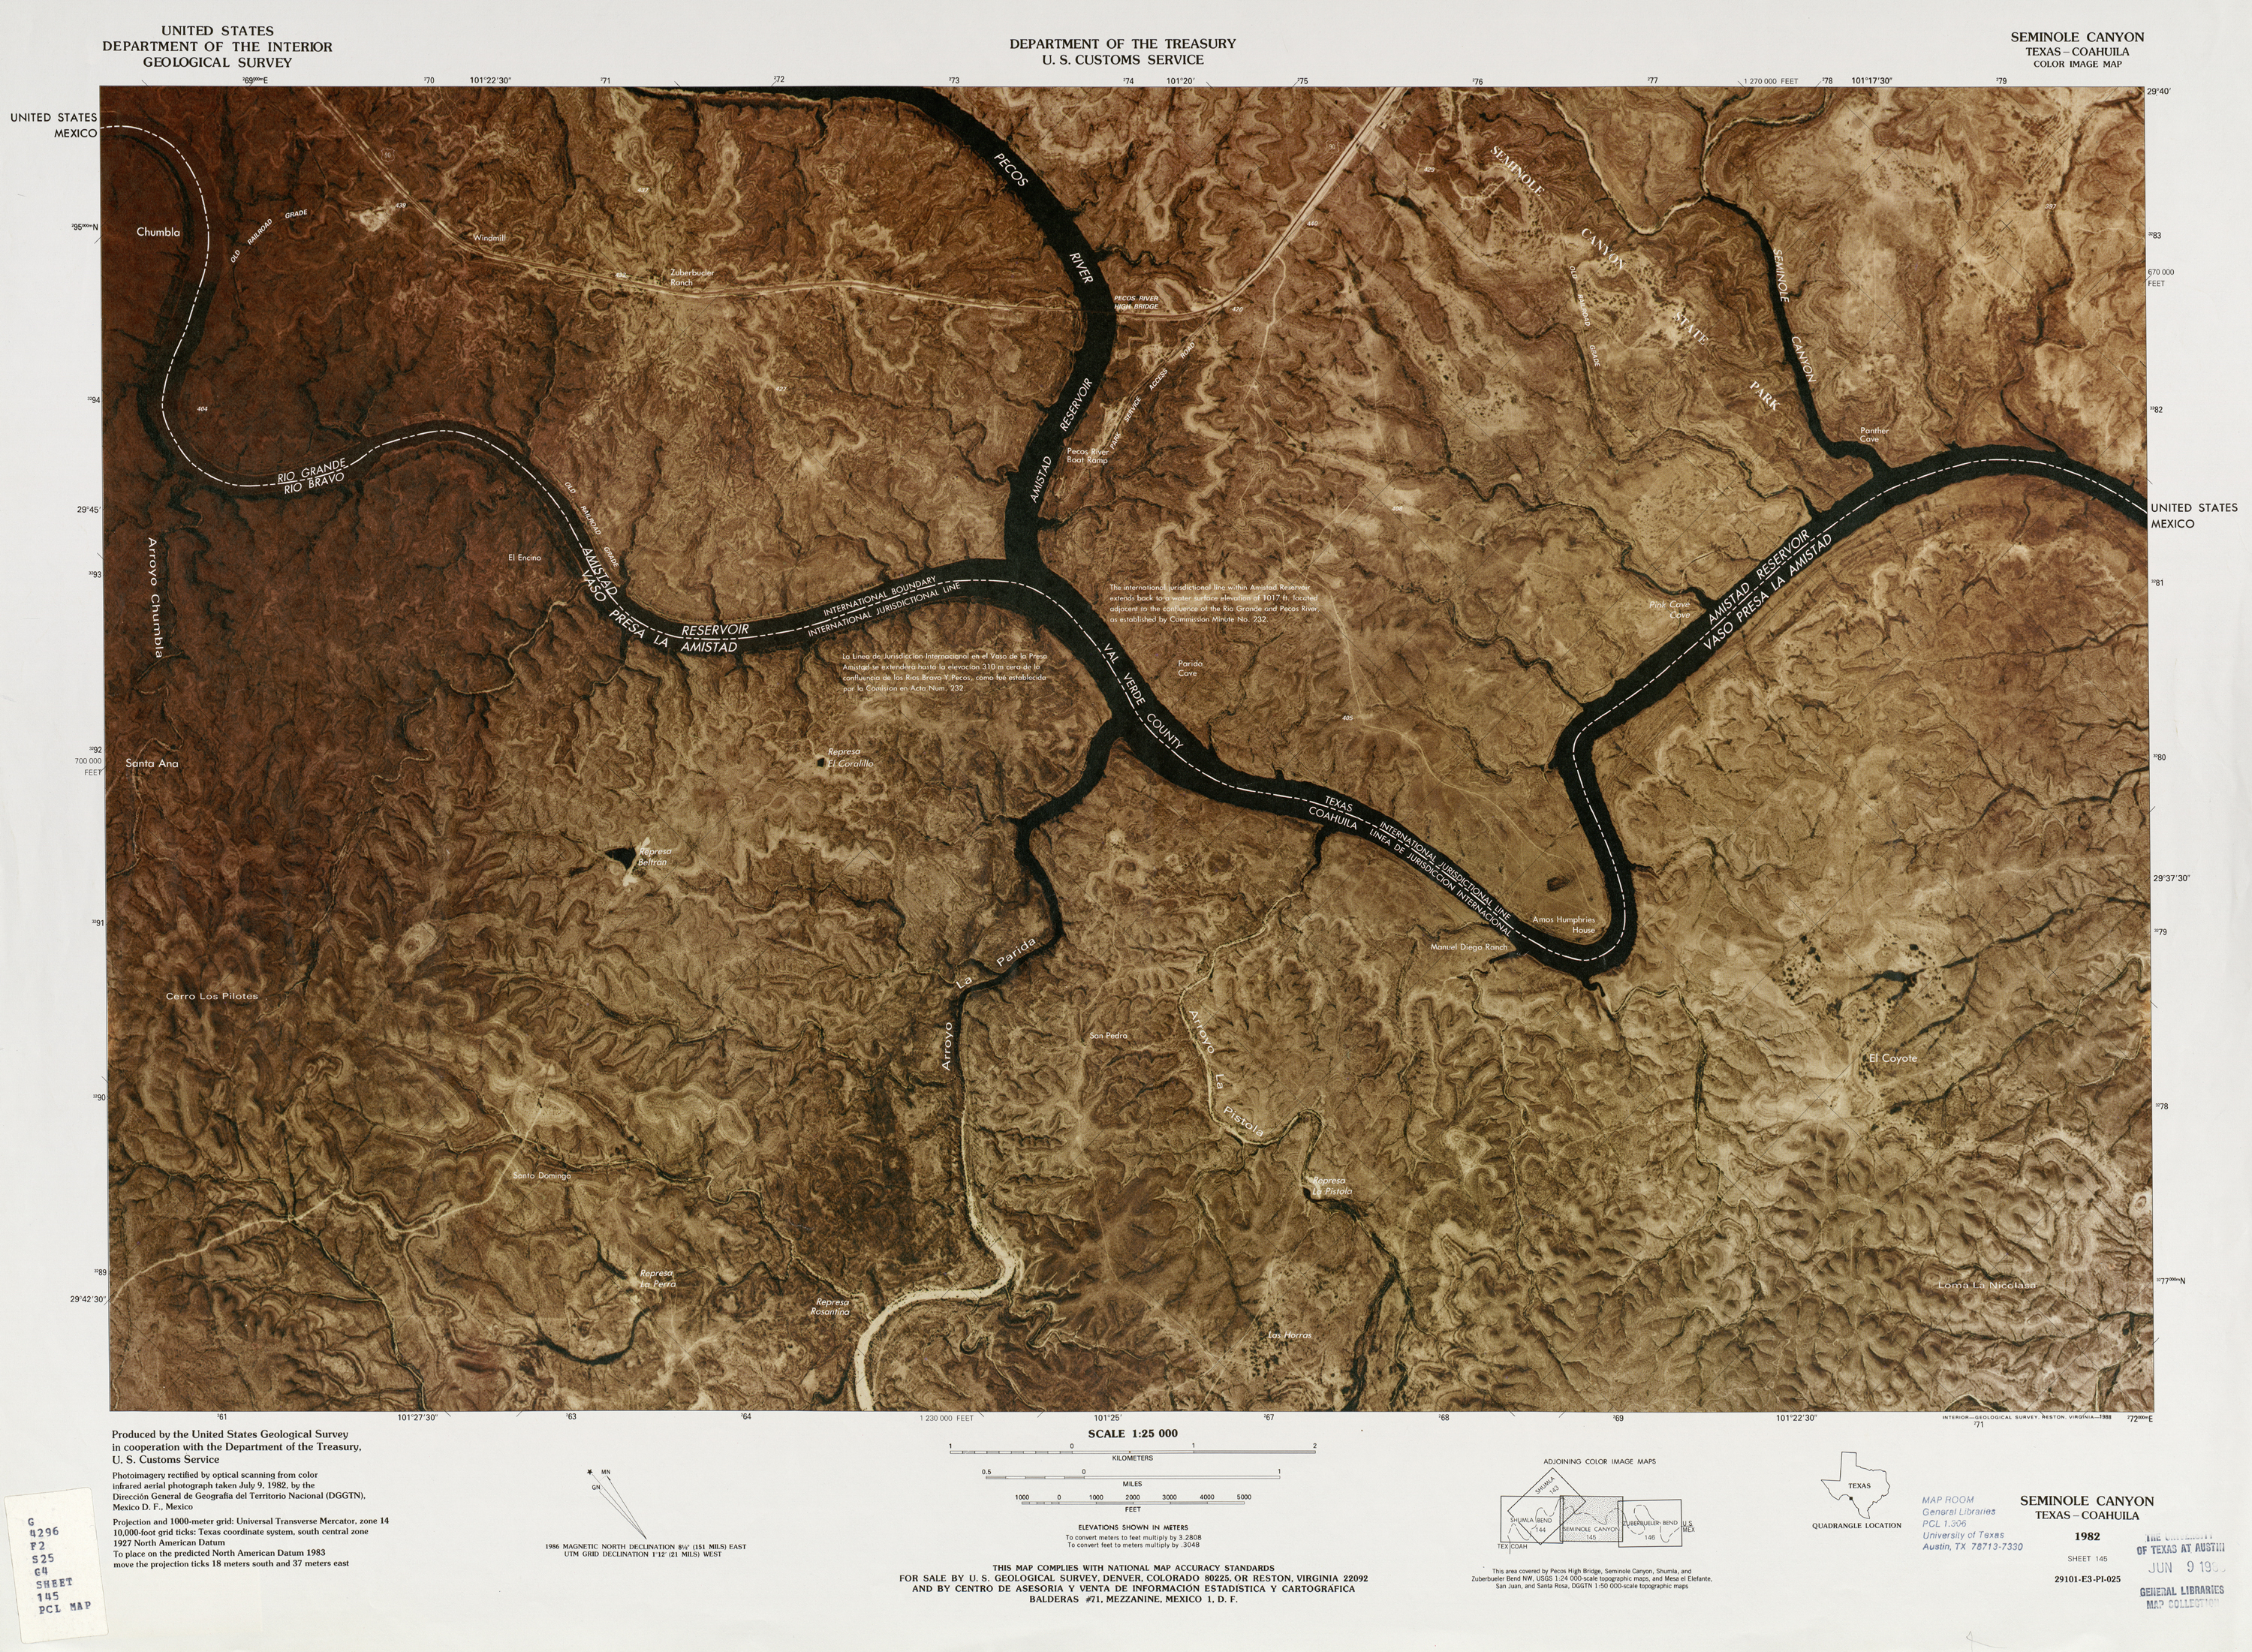 Mapa Fronterizo de México-Estados Unidos, Seminole Canyon 1982